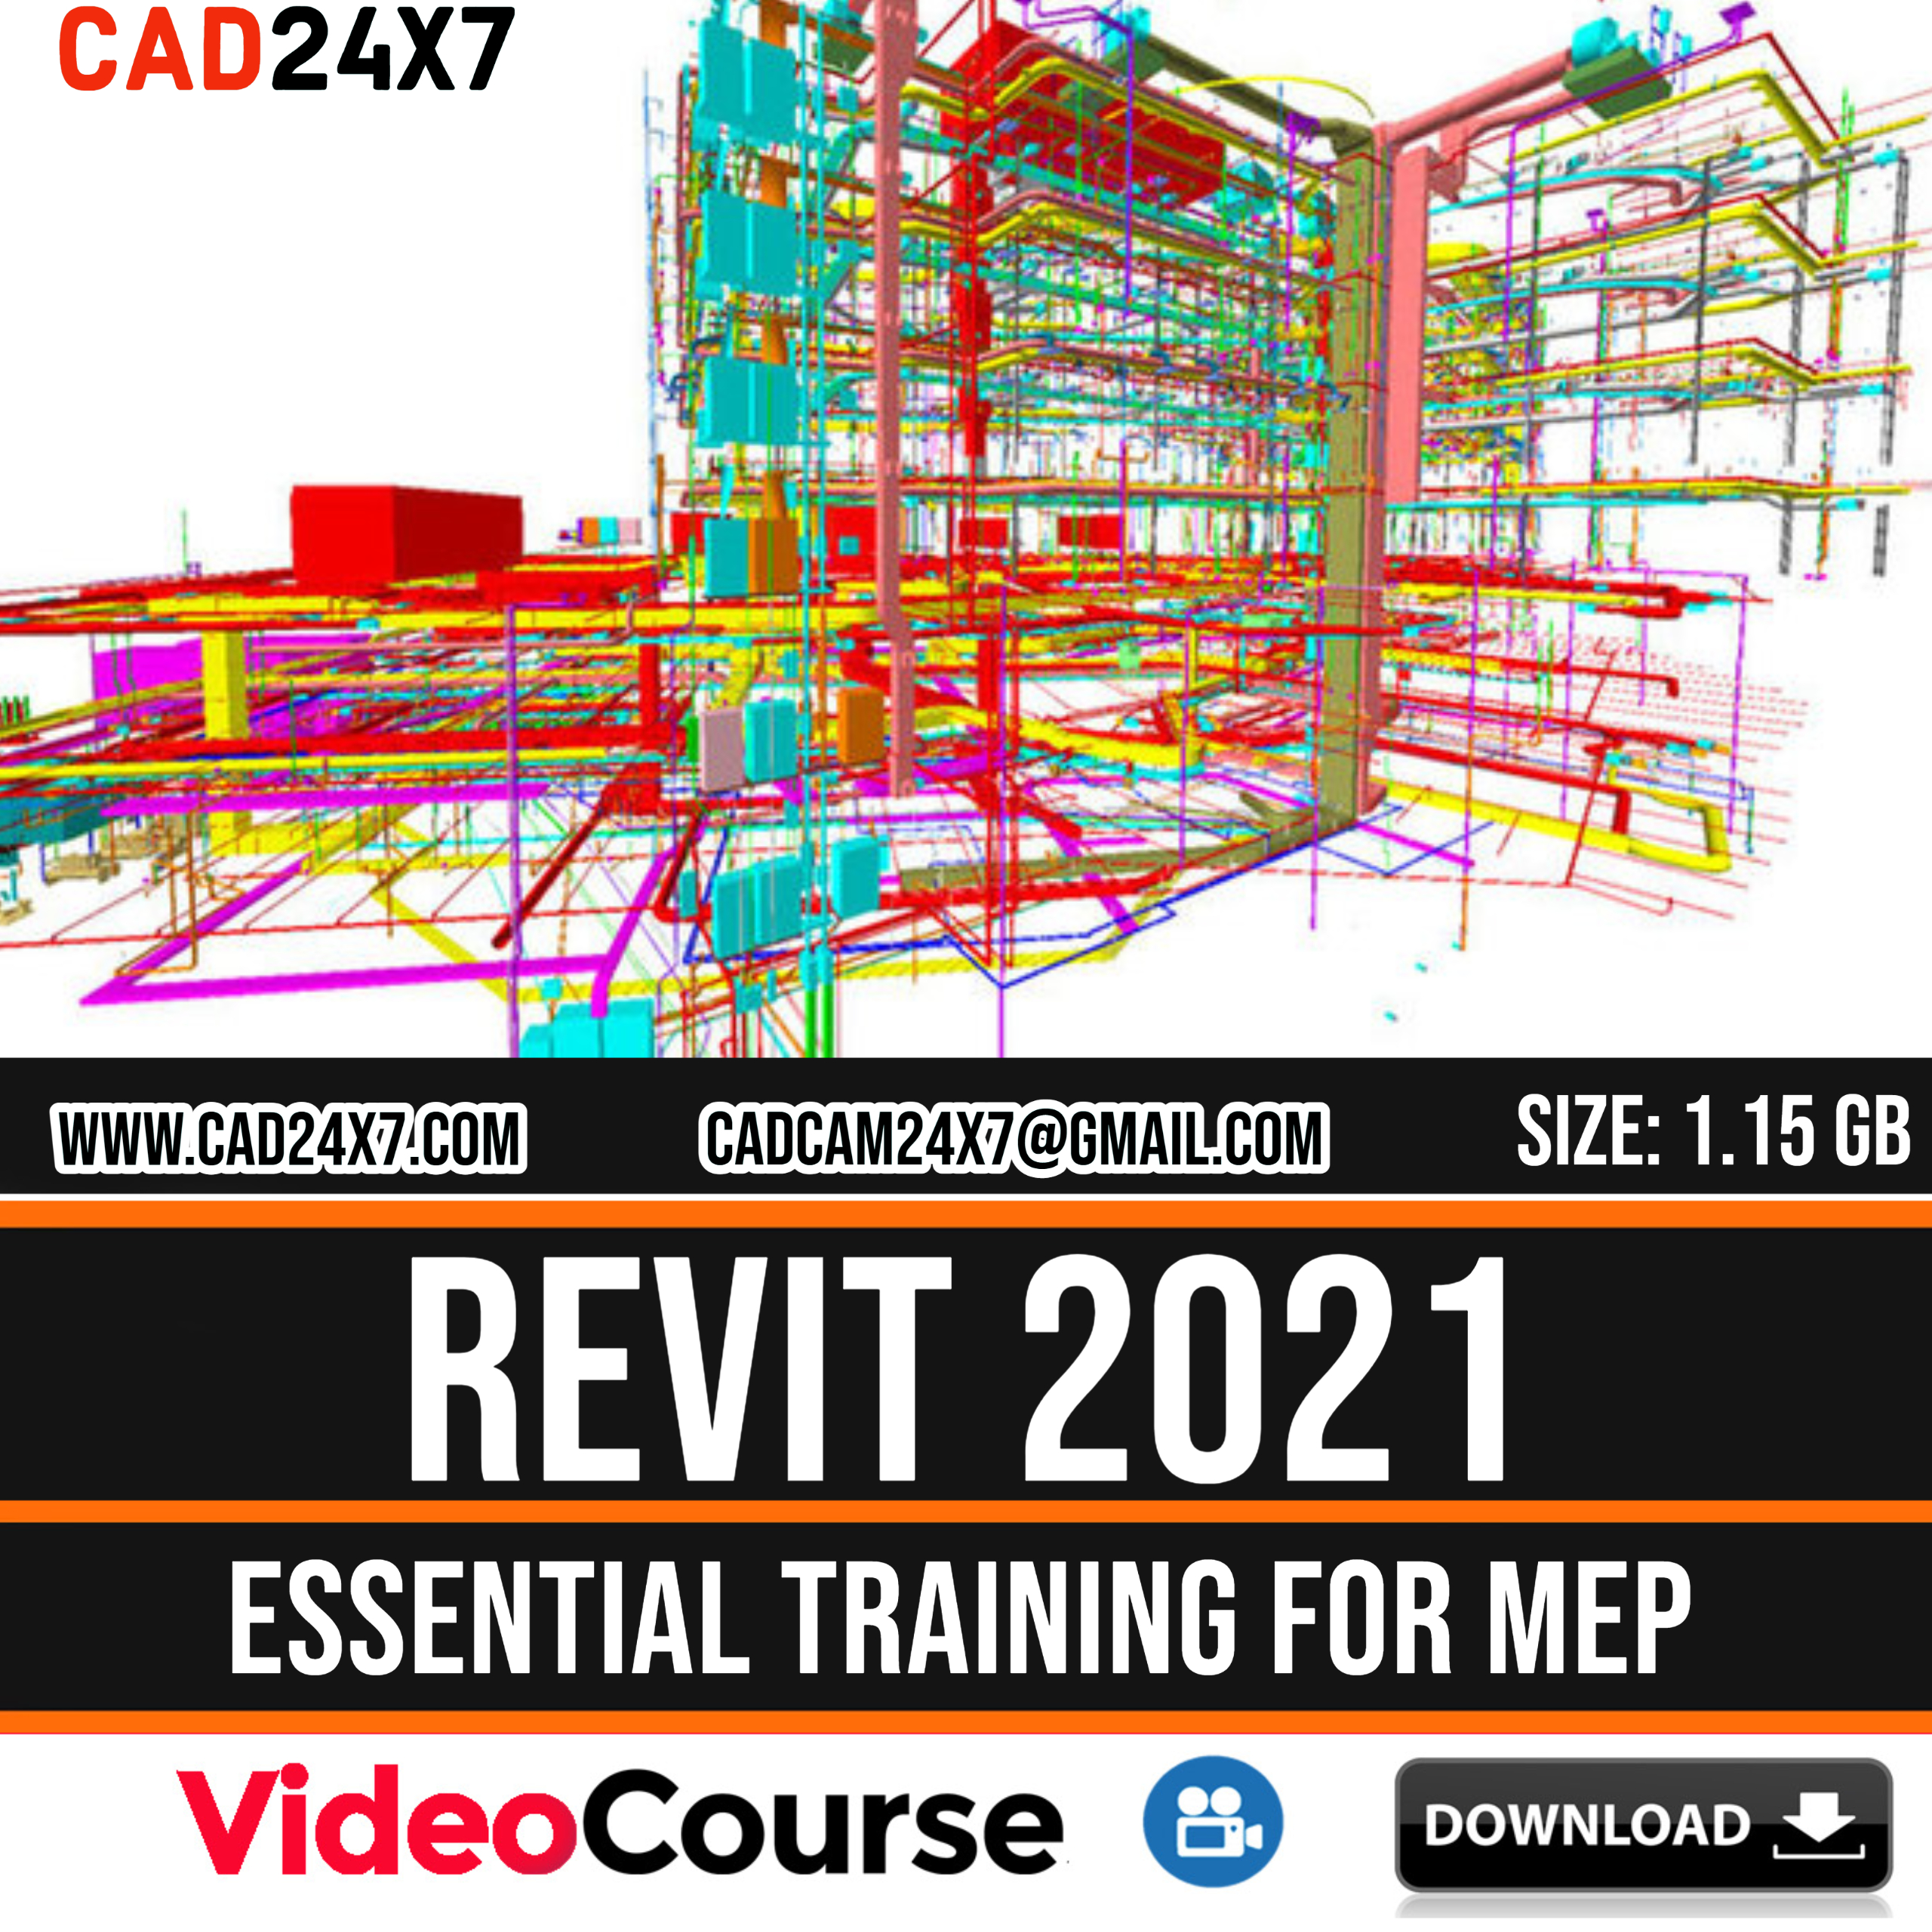 Revit 2021 Essential Training for MEP